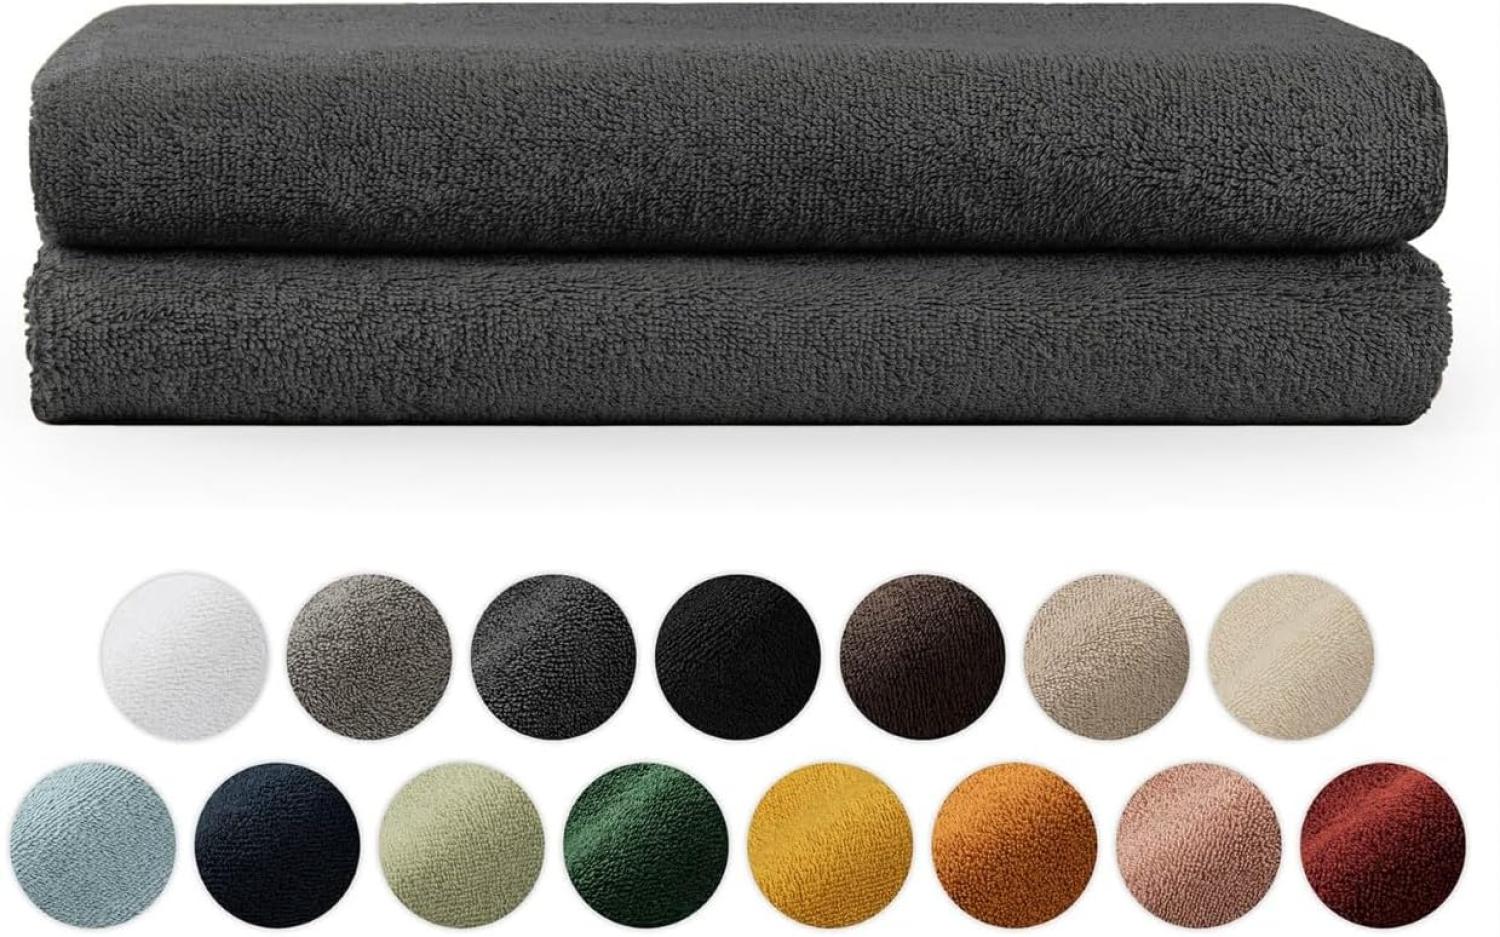 Blumtal Premium Frottier Handtücher Set mit Aufhängschlaufen - Baumwolle Oeko-TEX Zertifiziert, weich, saugstark - 2X Badetuch (70x140 cm), Anthrazit Bild 1